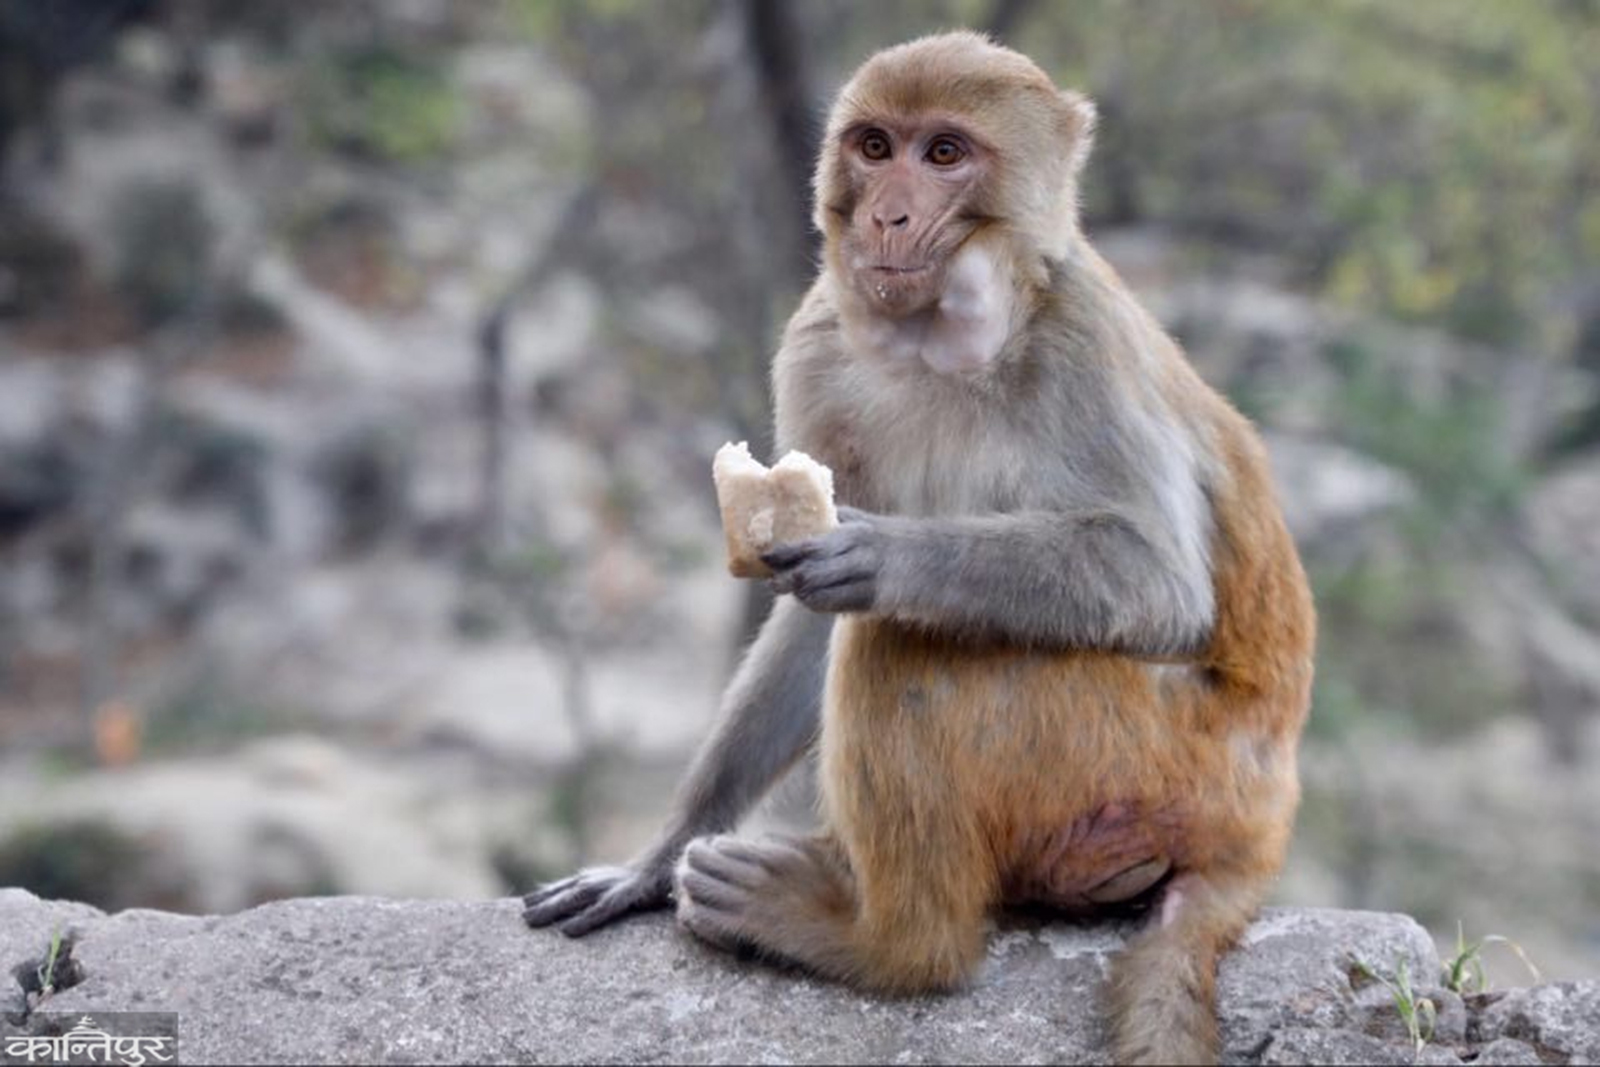 foto-reportaje-voluntarios-al-rescate-de-macacos-en-nepal-dando-de-comer-a-los-monos1.jpg